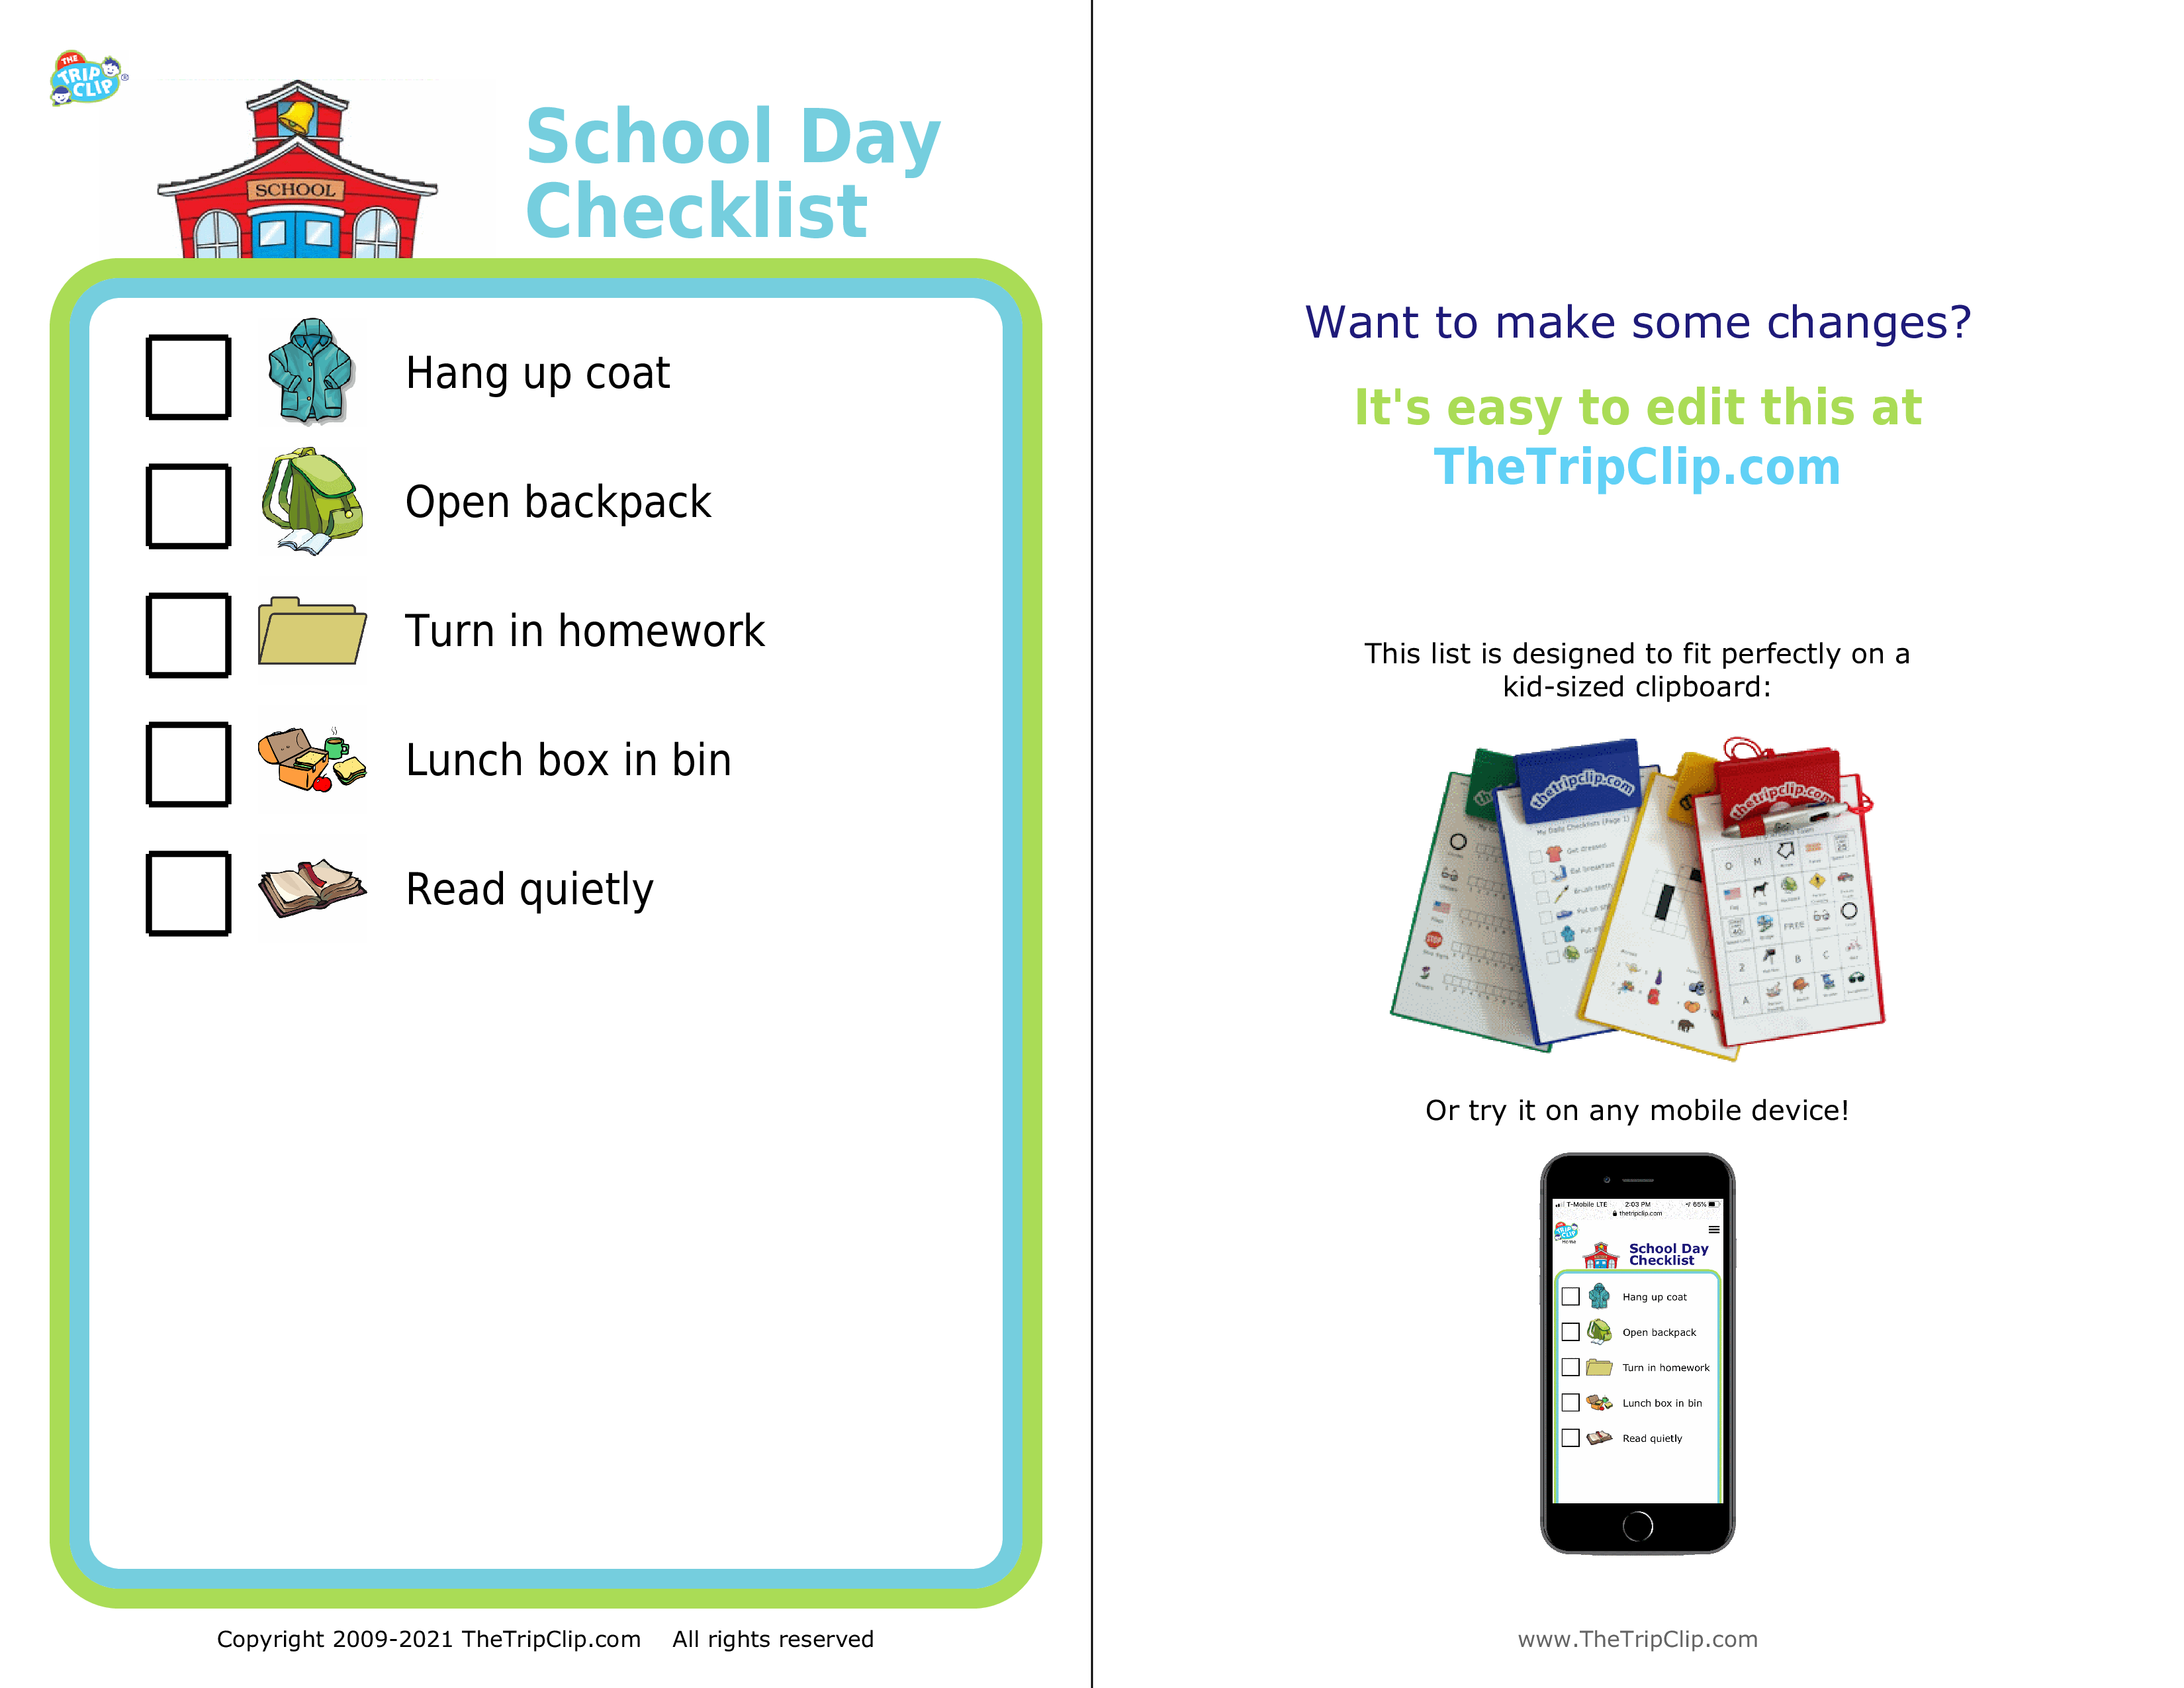 Picture checklist of a school day start checklist